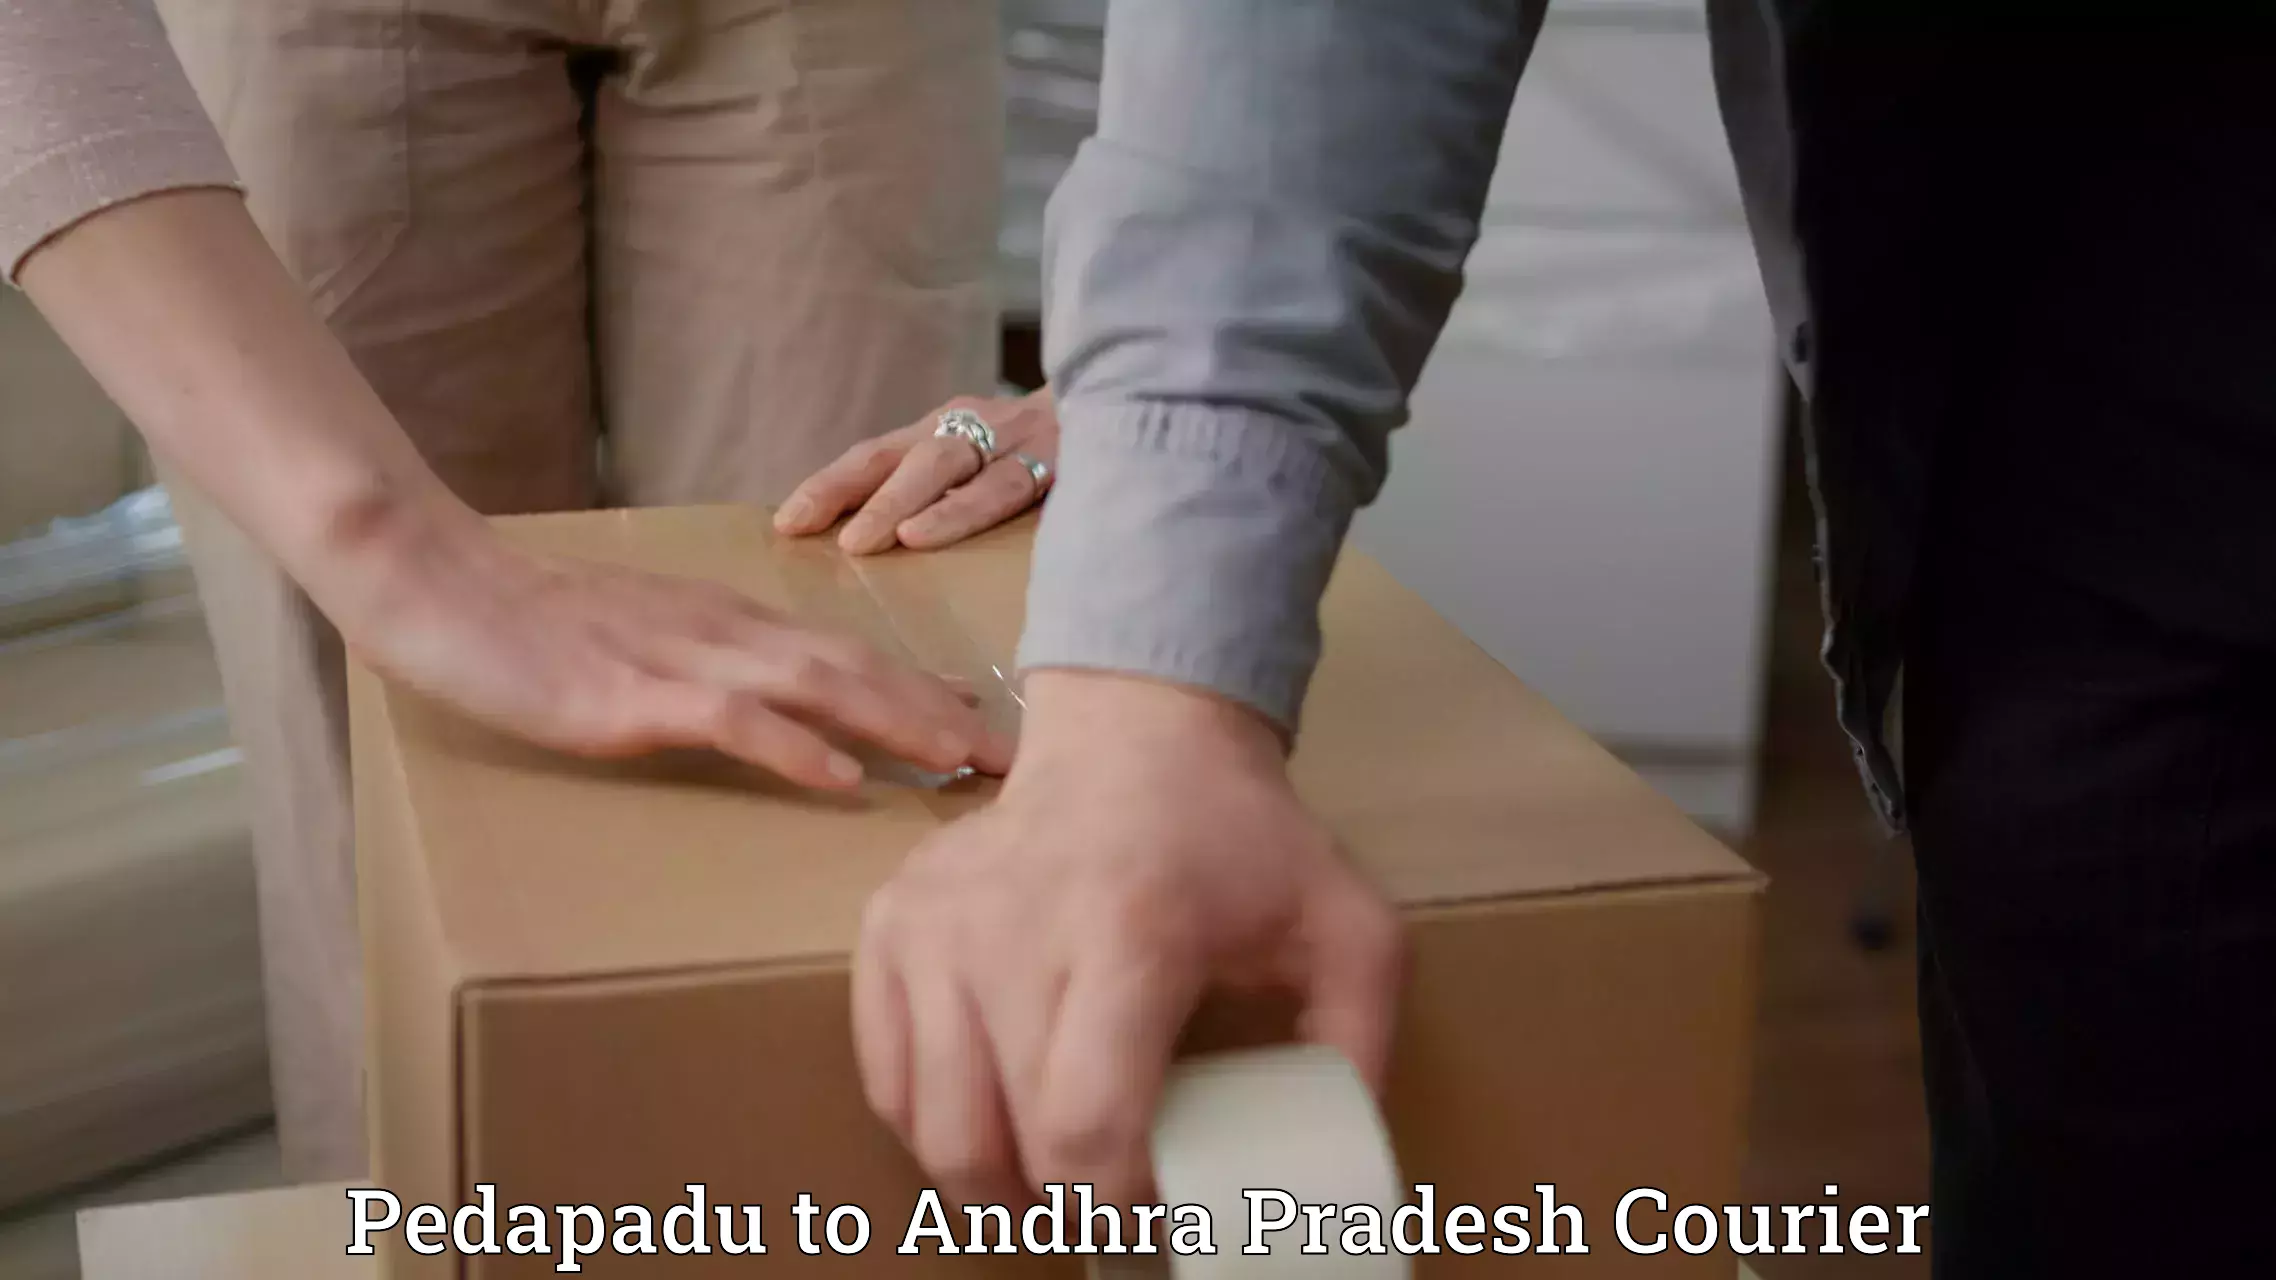 Express package handling Pedapadu to Andhra Pradesh